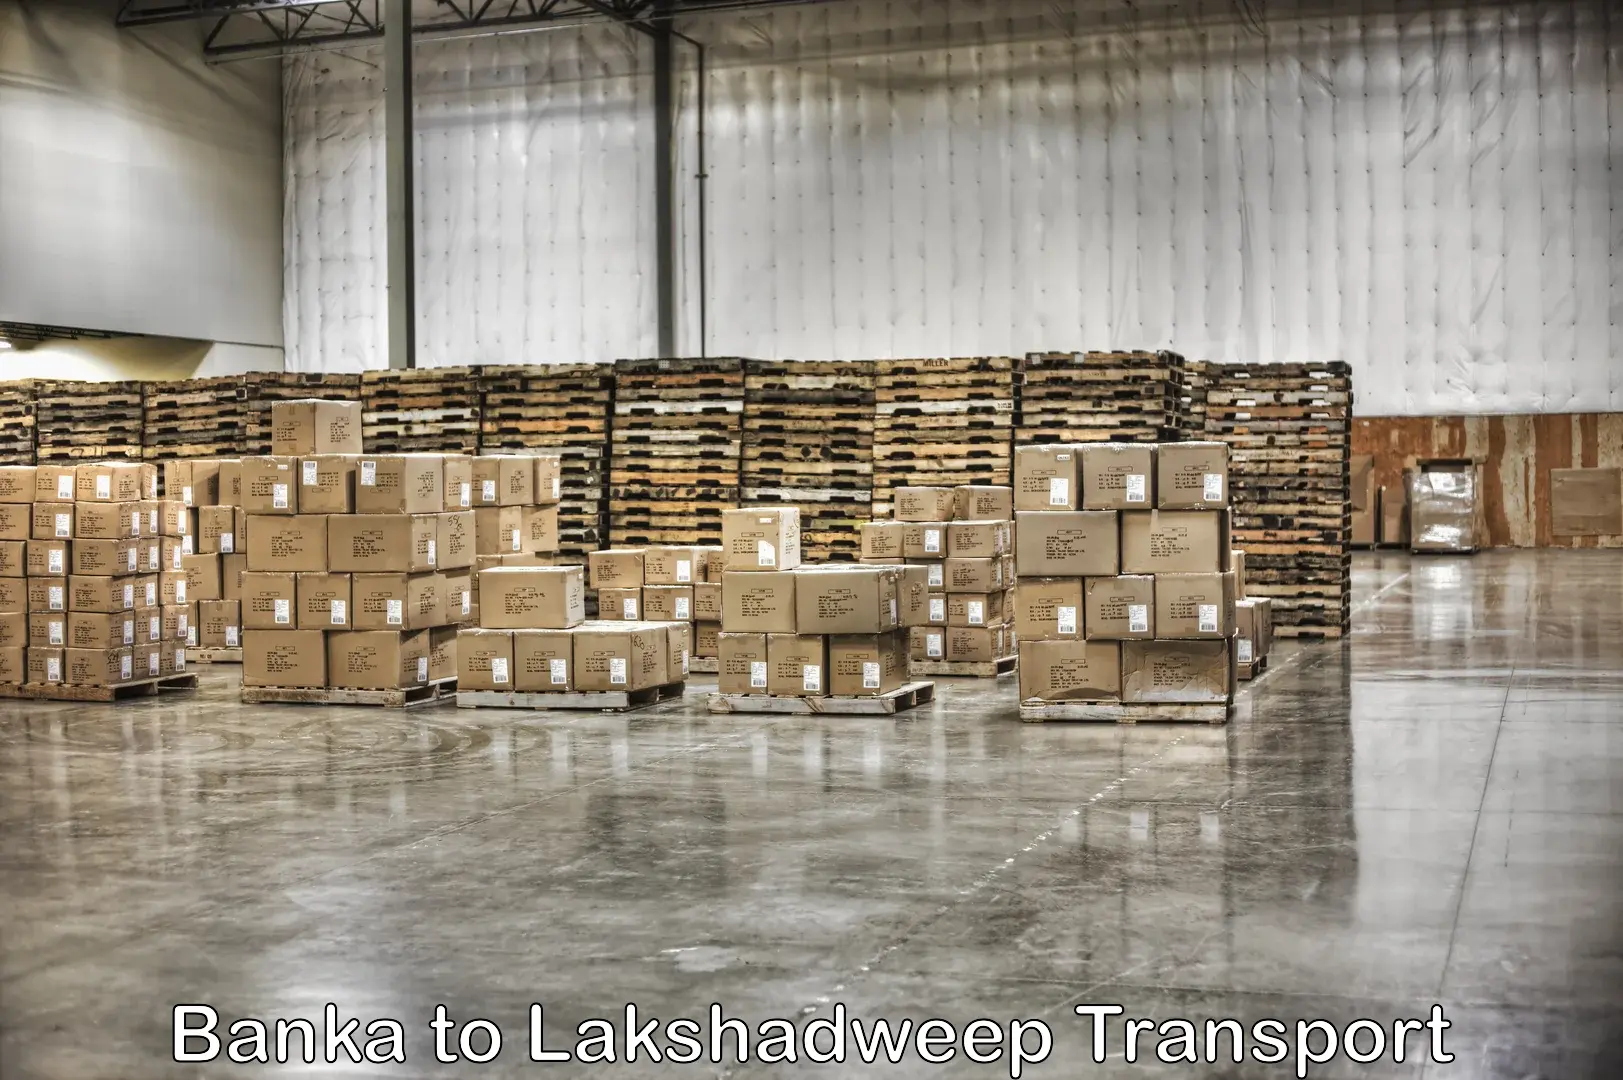 Furniture transport service Banka to Lakshadweep